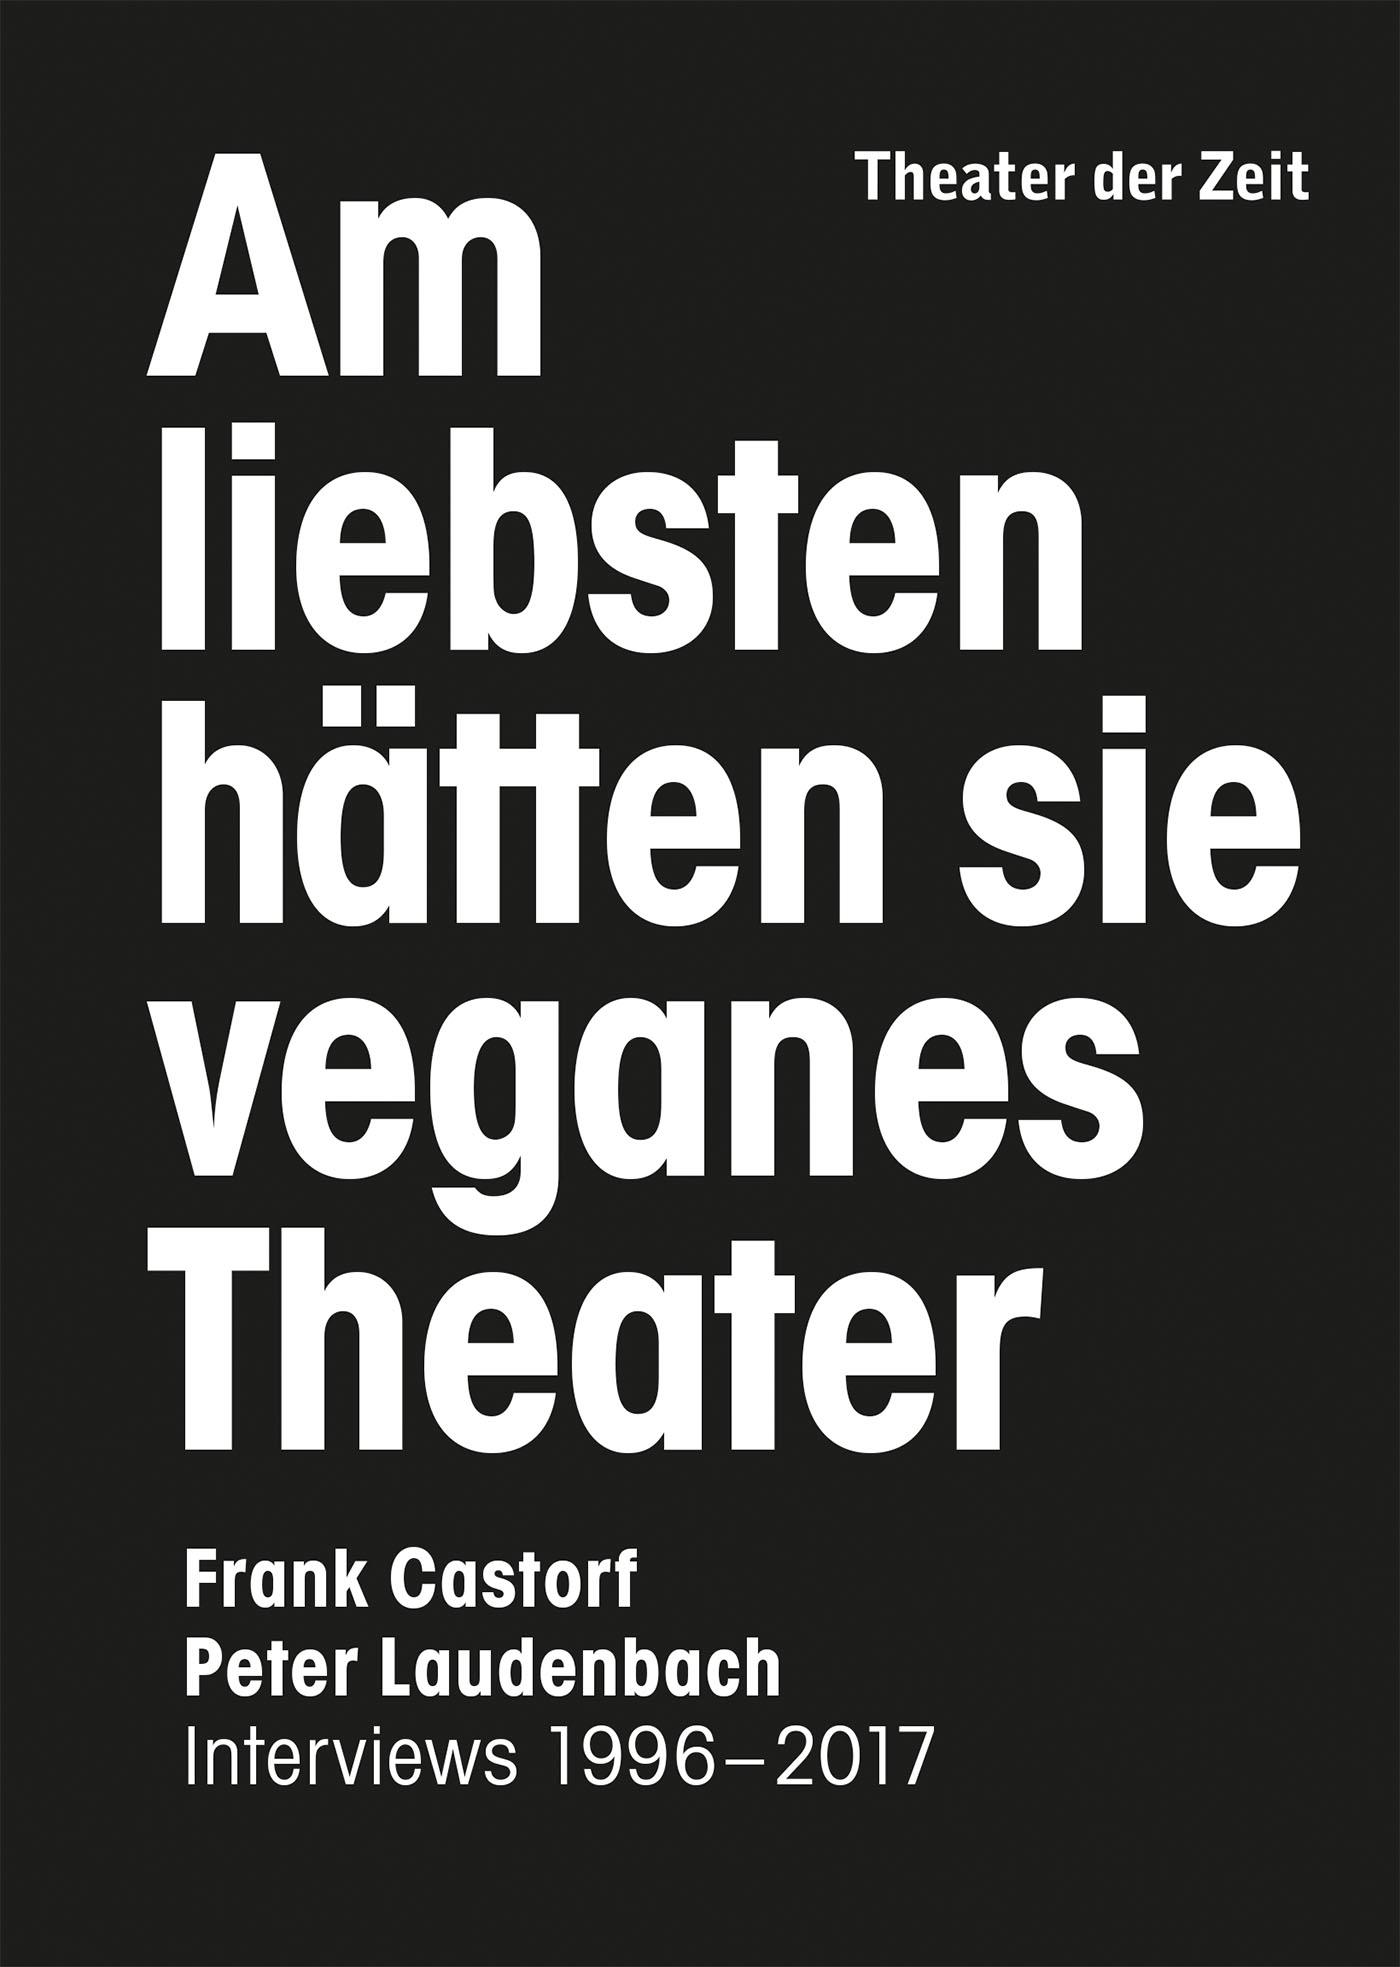 "Am liebsten hätten sie veganes Theater. Frank Castorf - Peter Laudenbach"